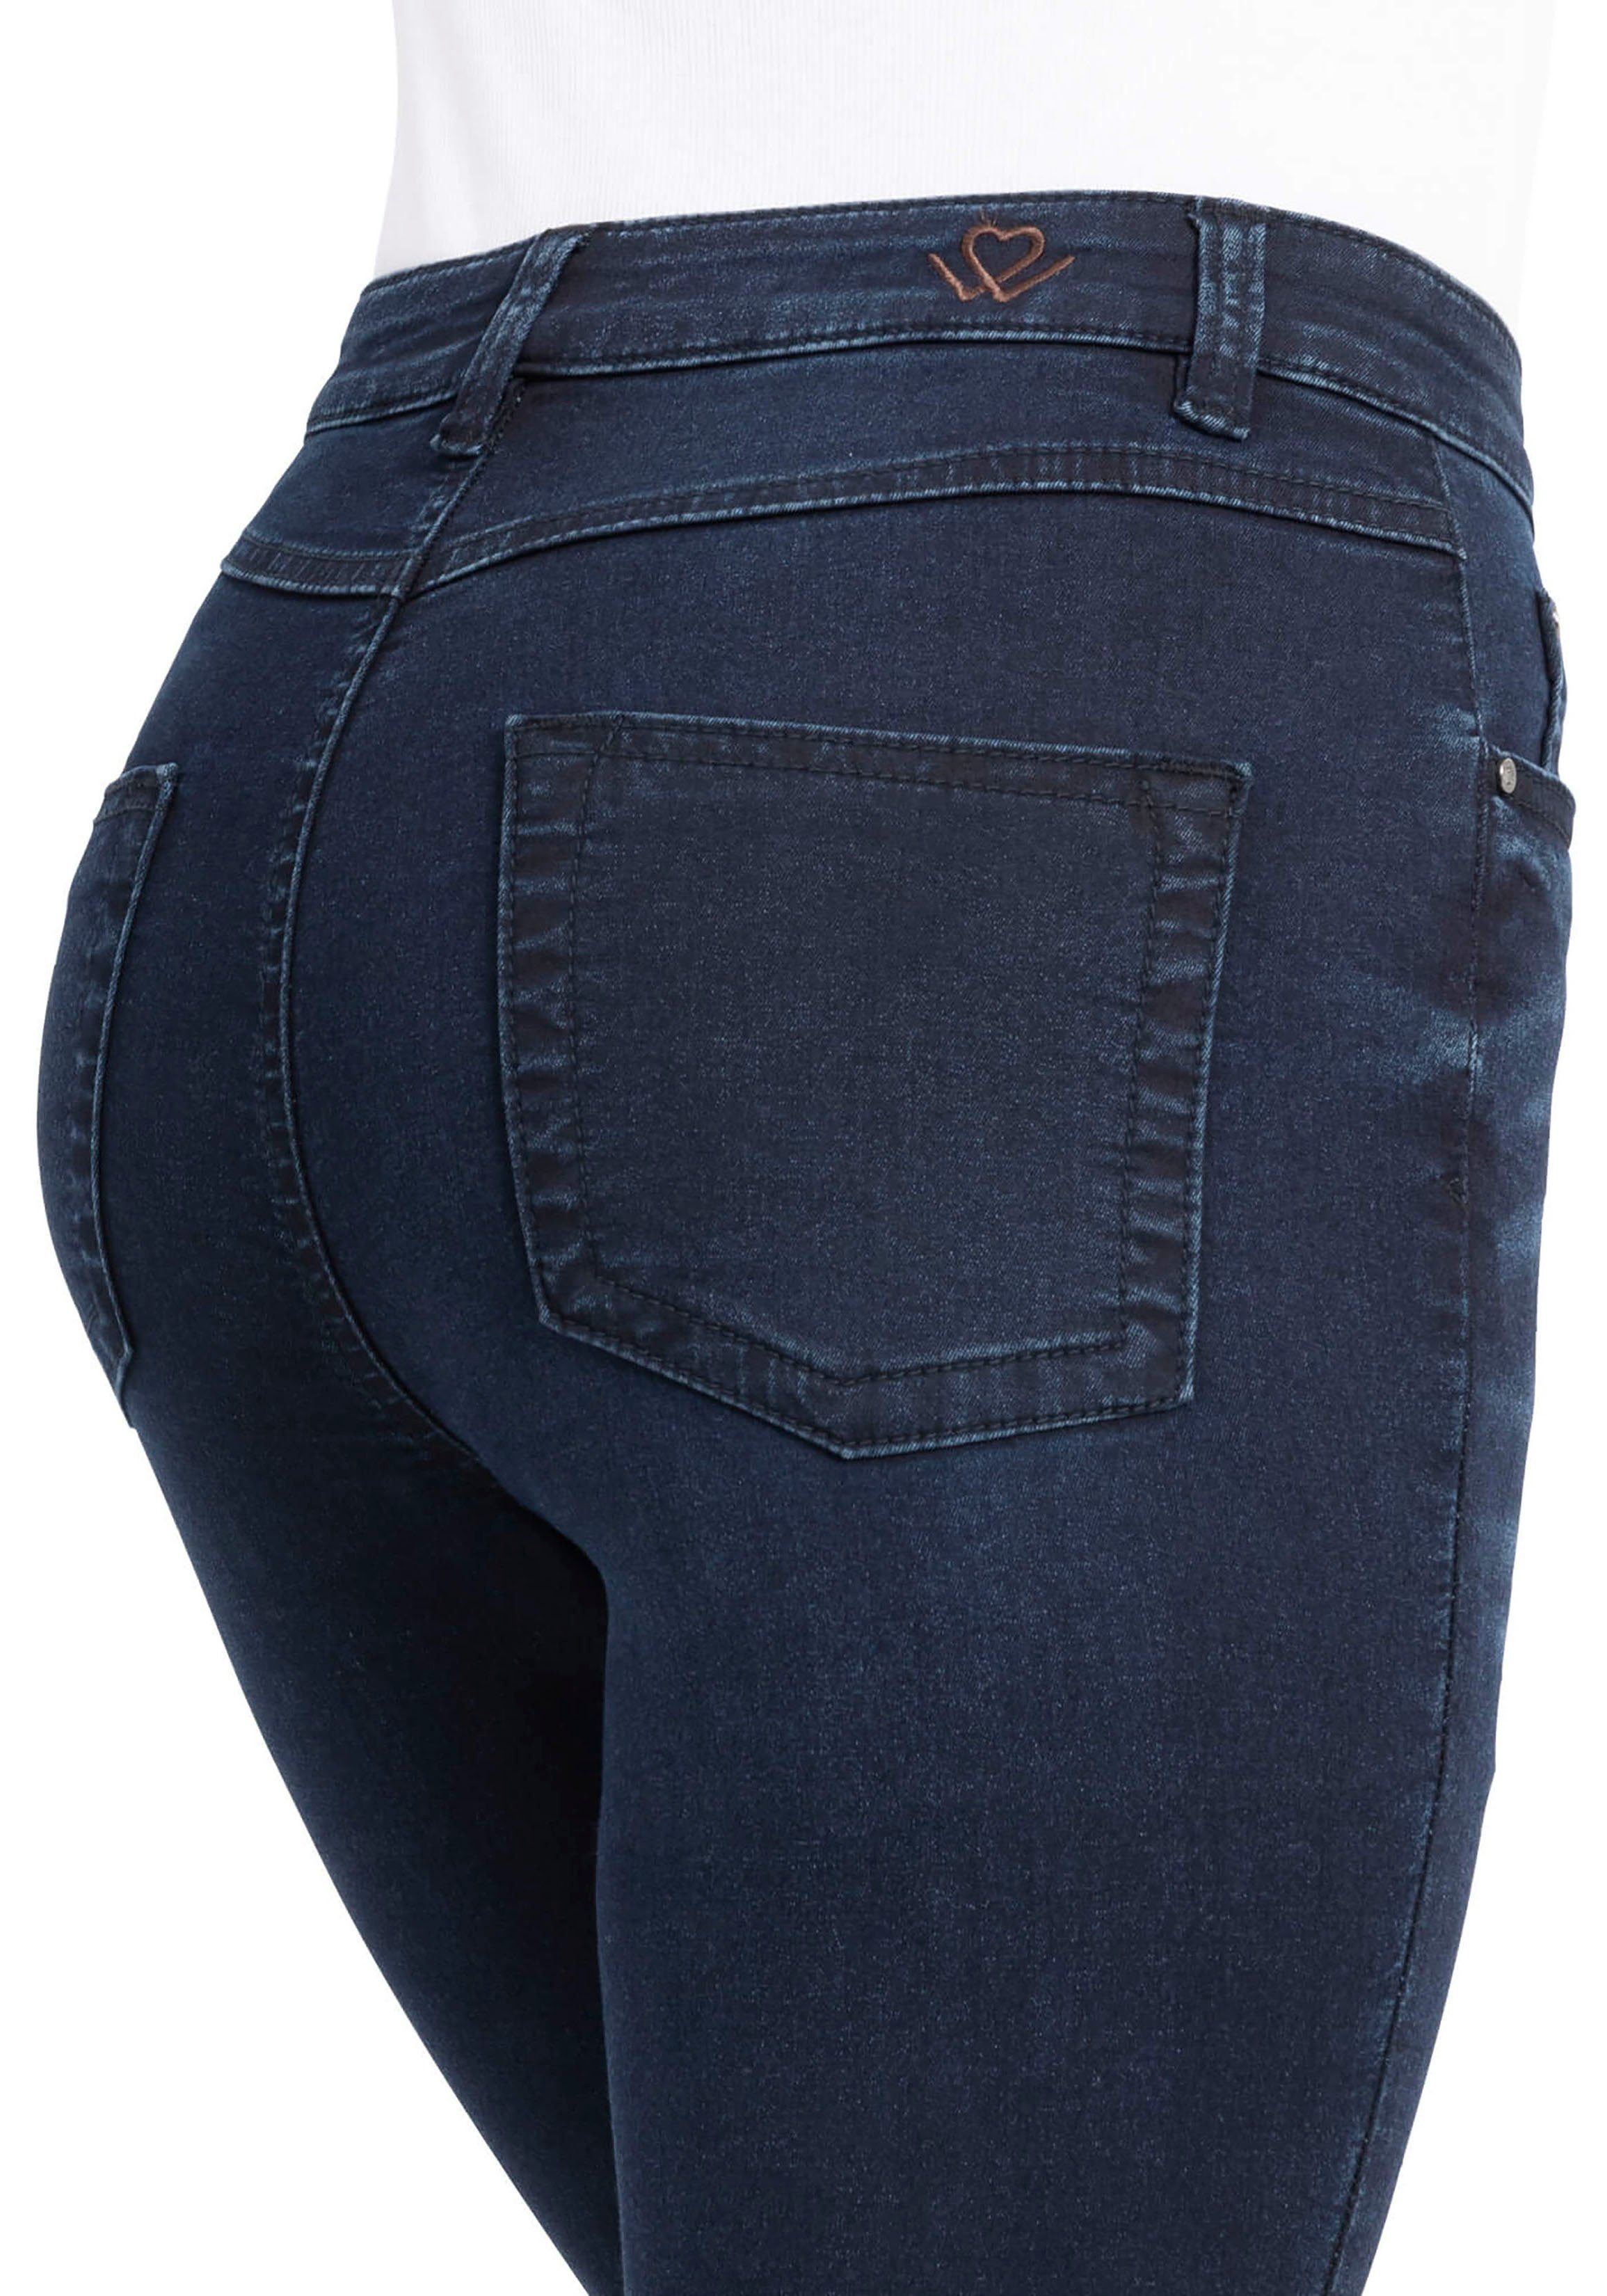 used High verkürztem Waist wonderjeans WH72 High-waist-Jeans blue mit leicht geschnitten Hoch Bein dark